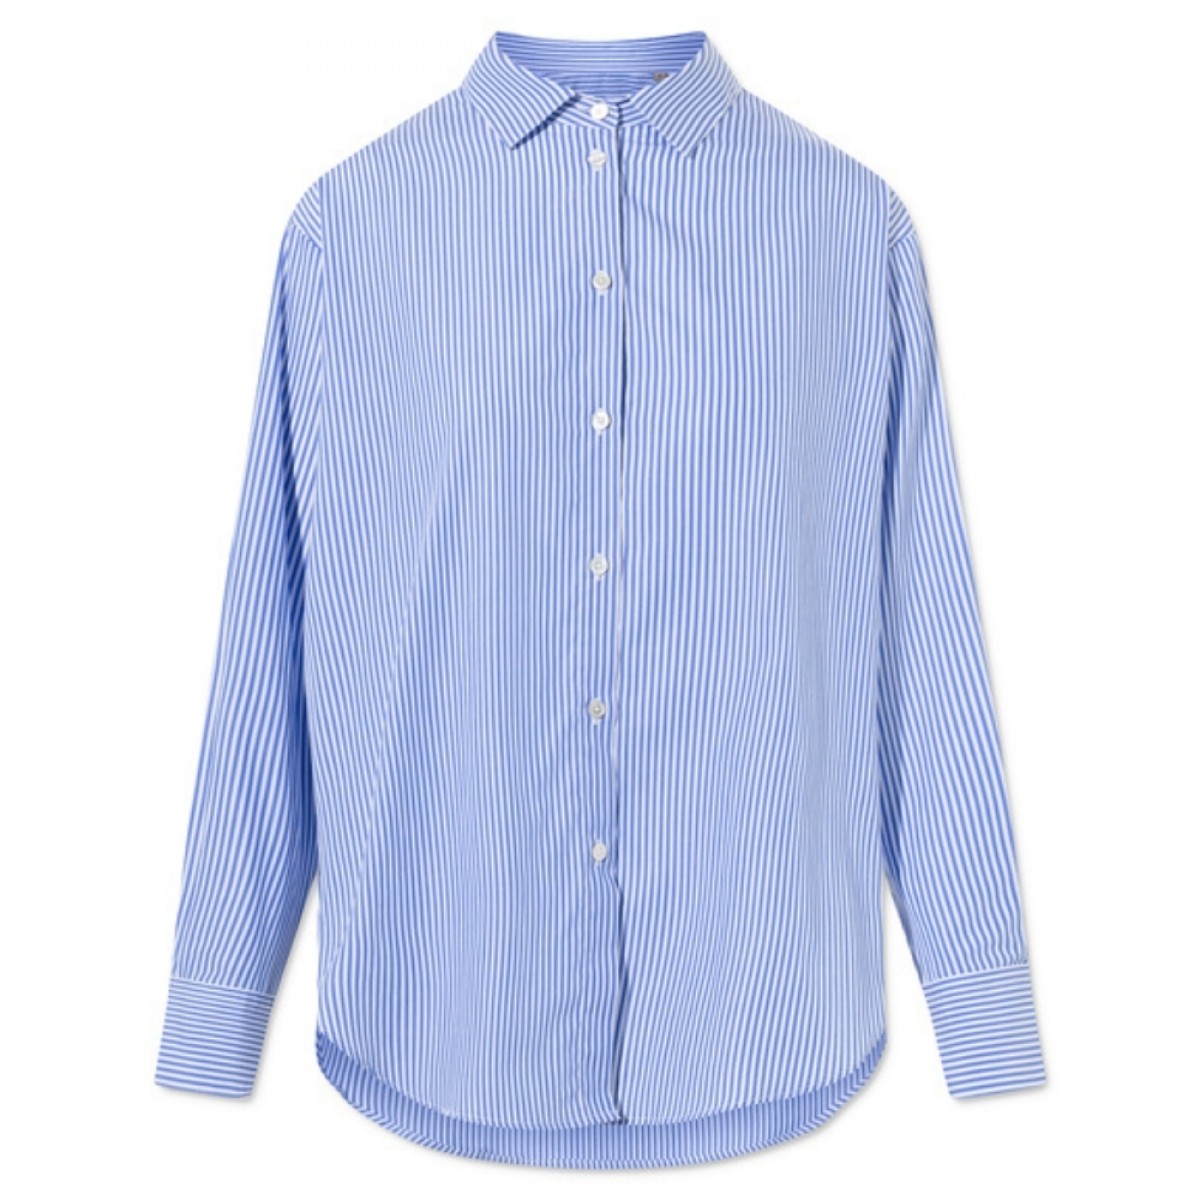 samita shirt - blue/white stripe - front